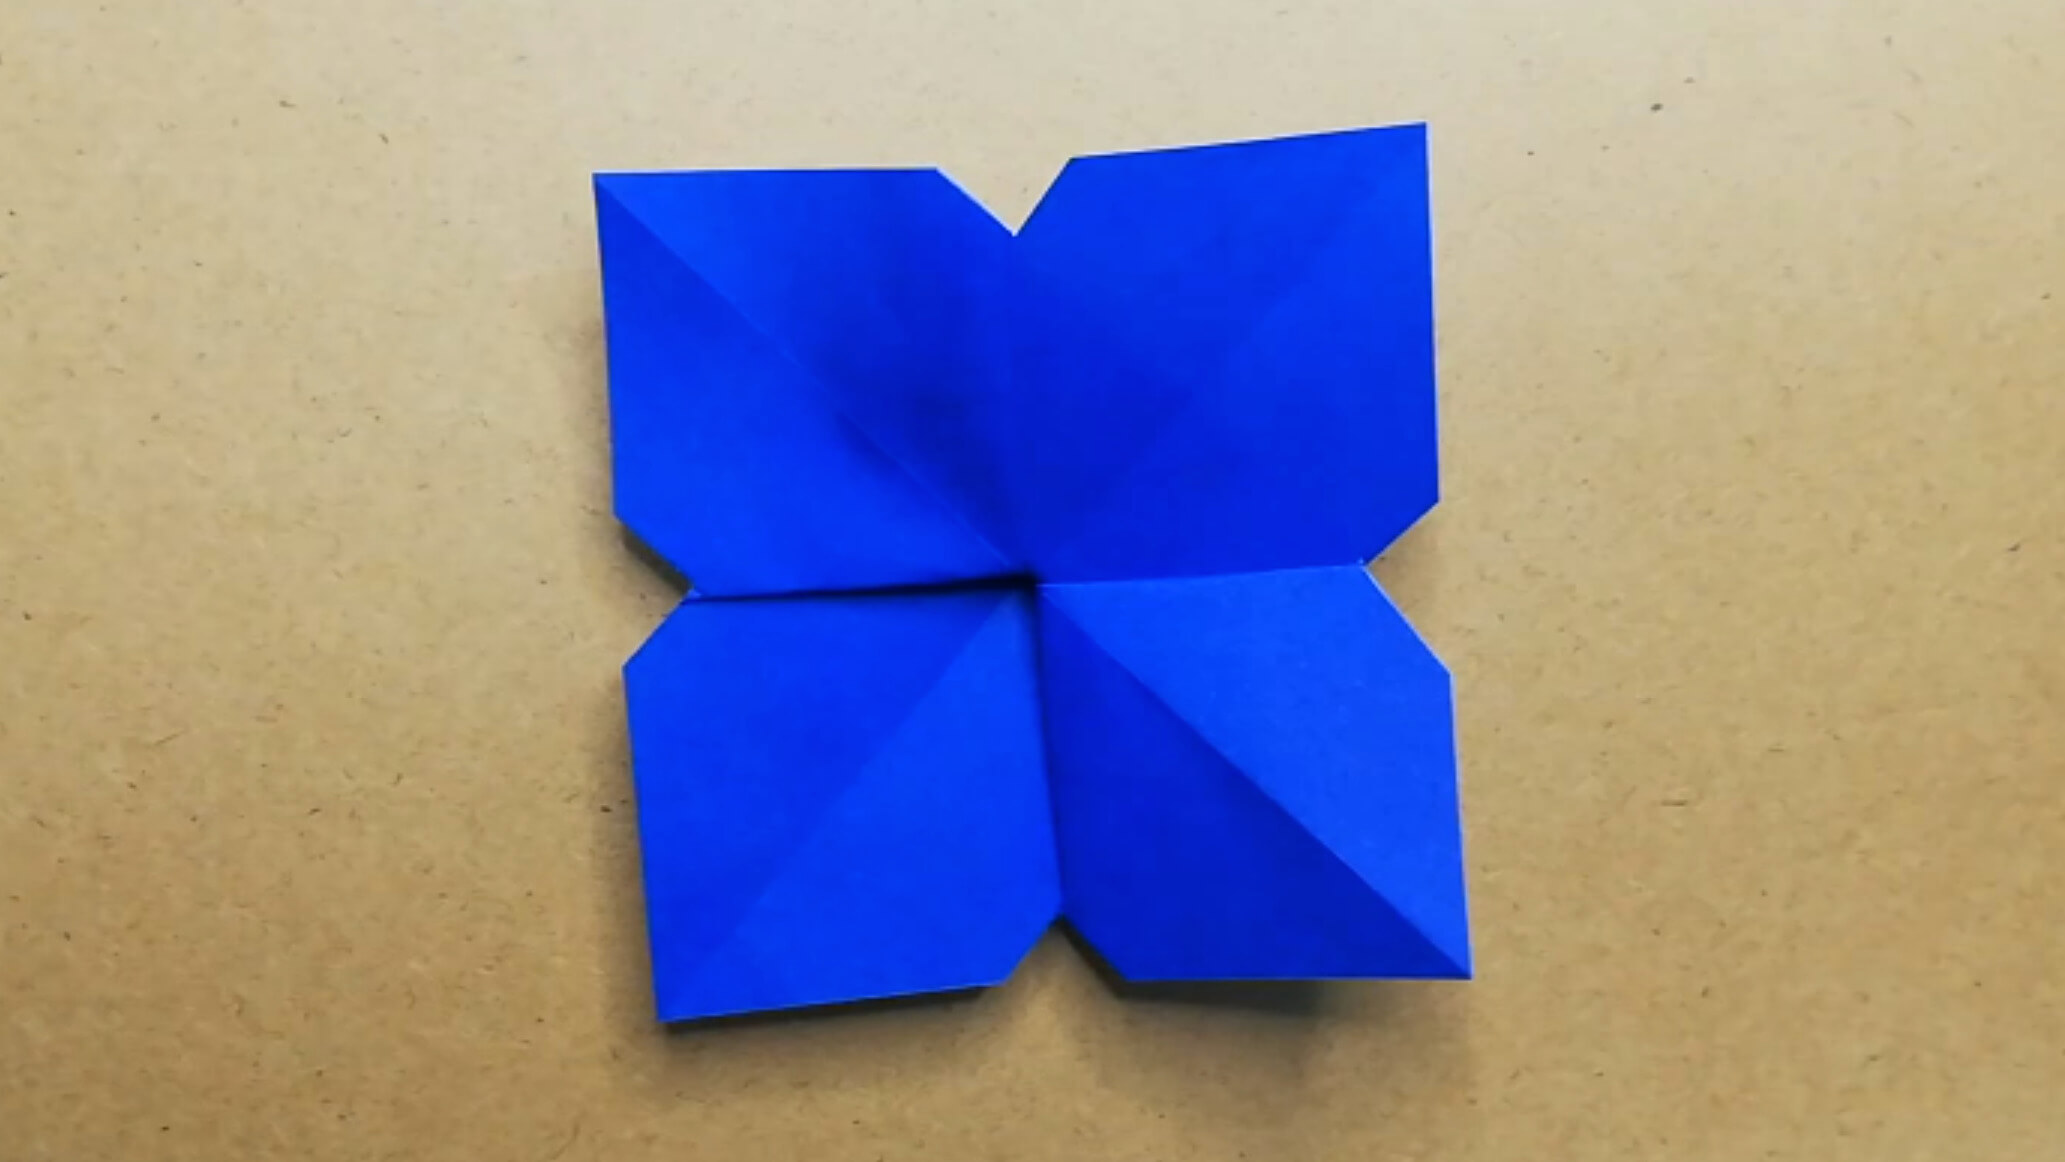 吉本芸人span マコトの一緒に折り紙 あじさい の折り方 動画 ほいくnote